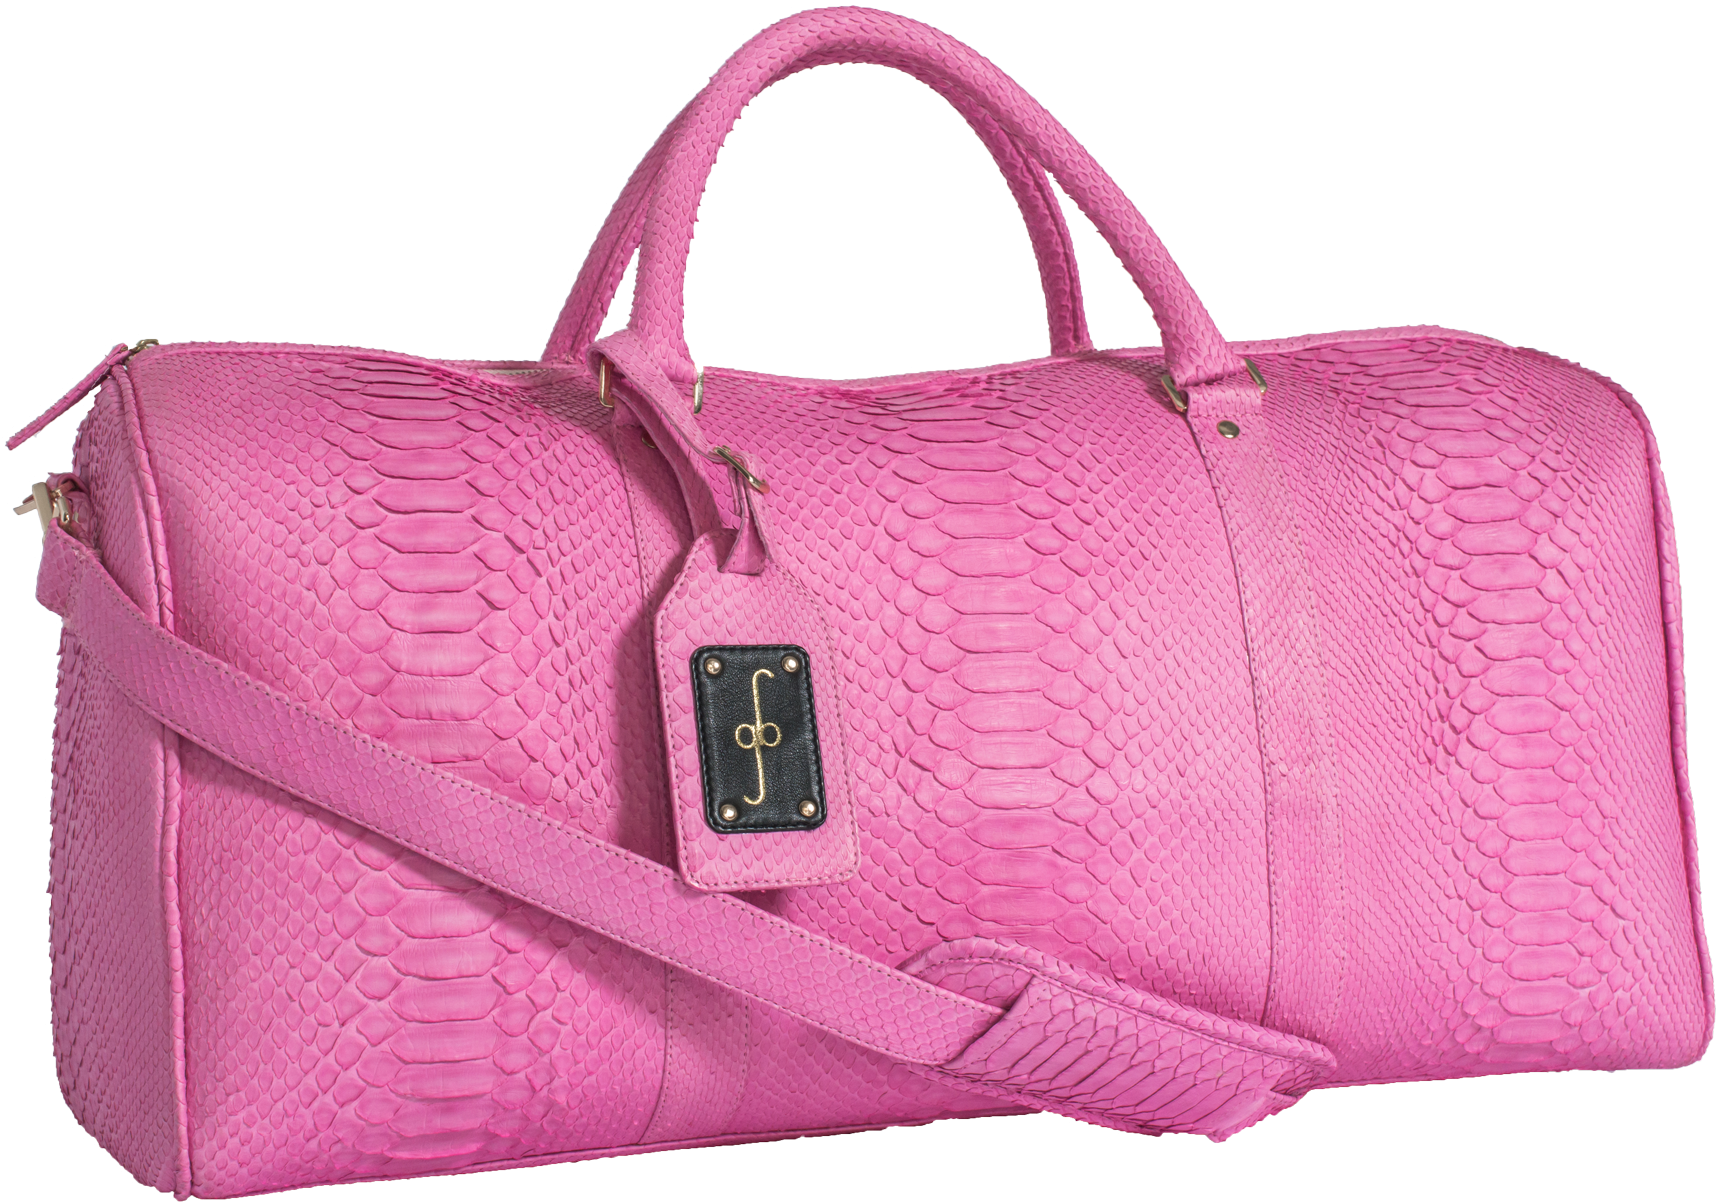 Розовая сумка PNG Фотографии